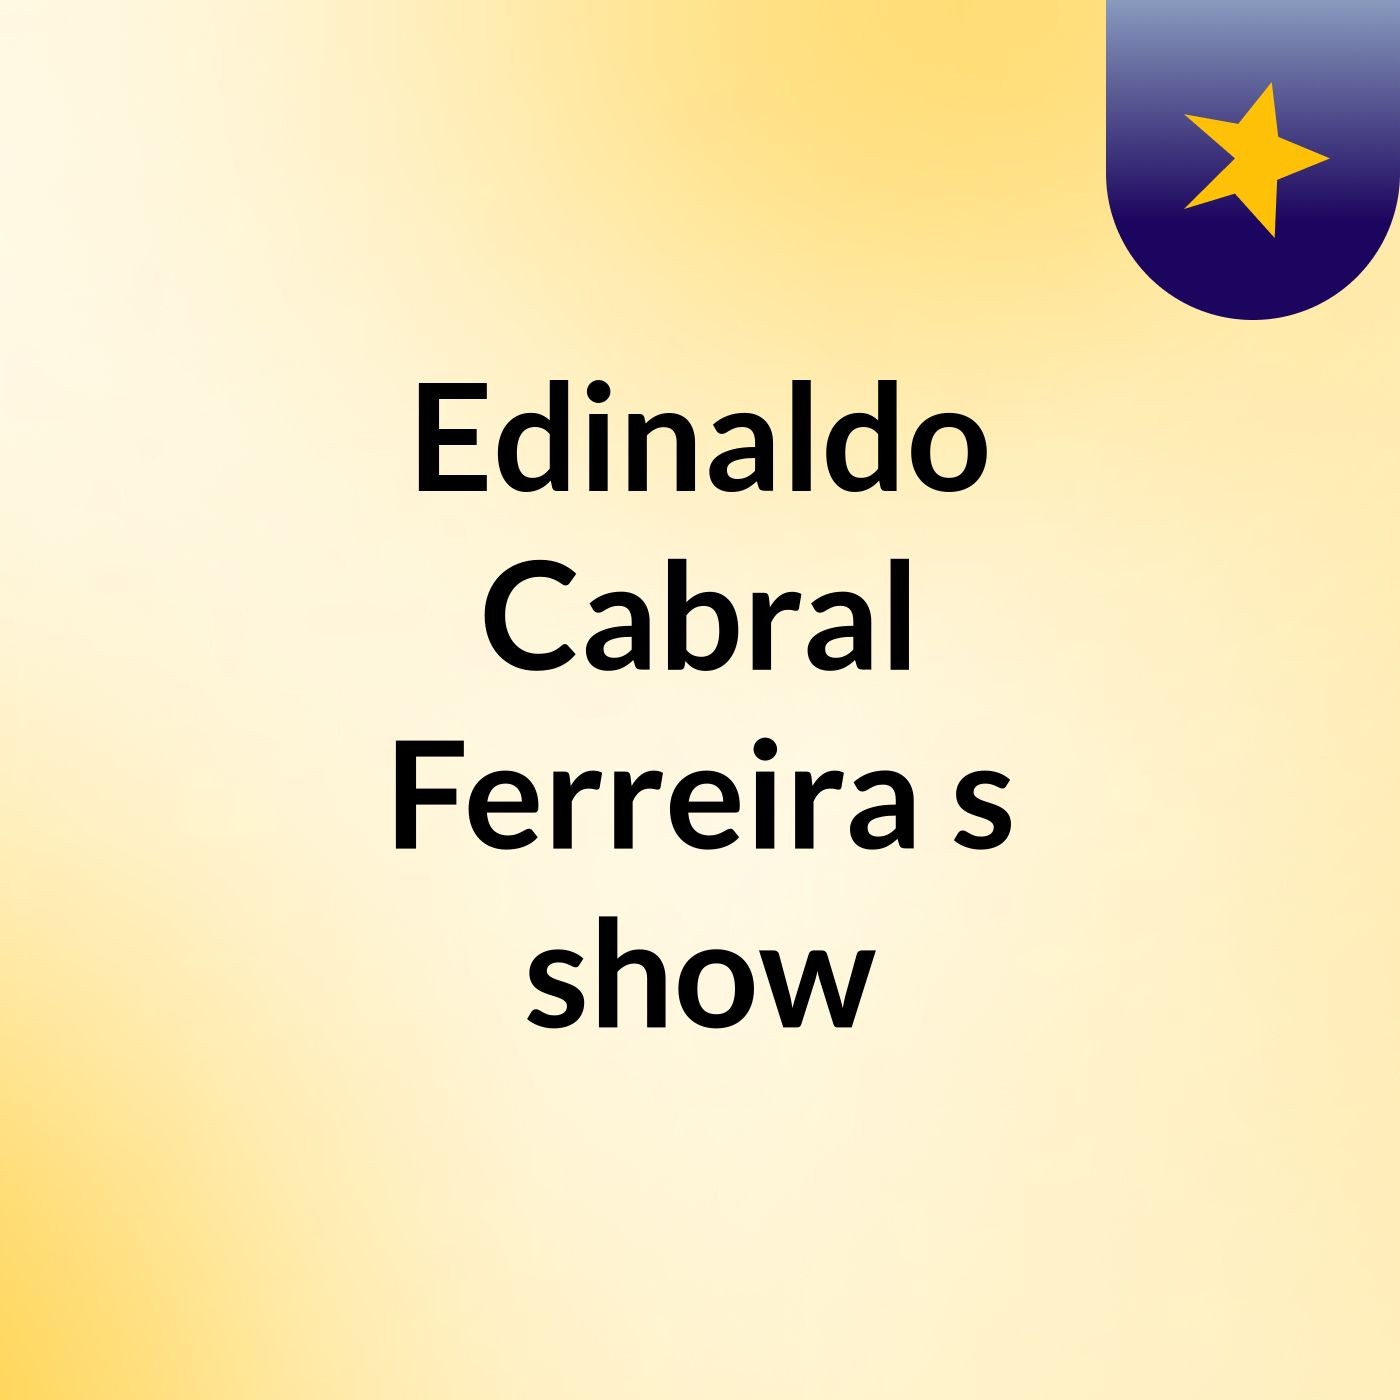 Edinaldo Cabral Ferreira's show